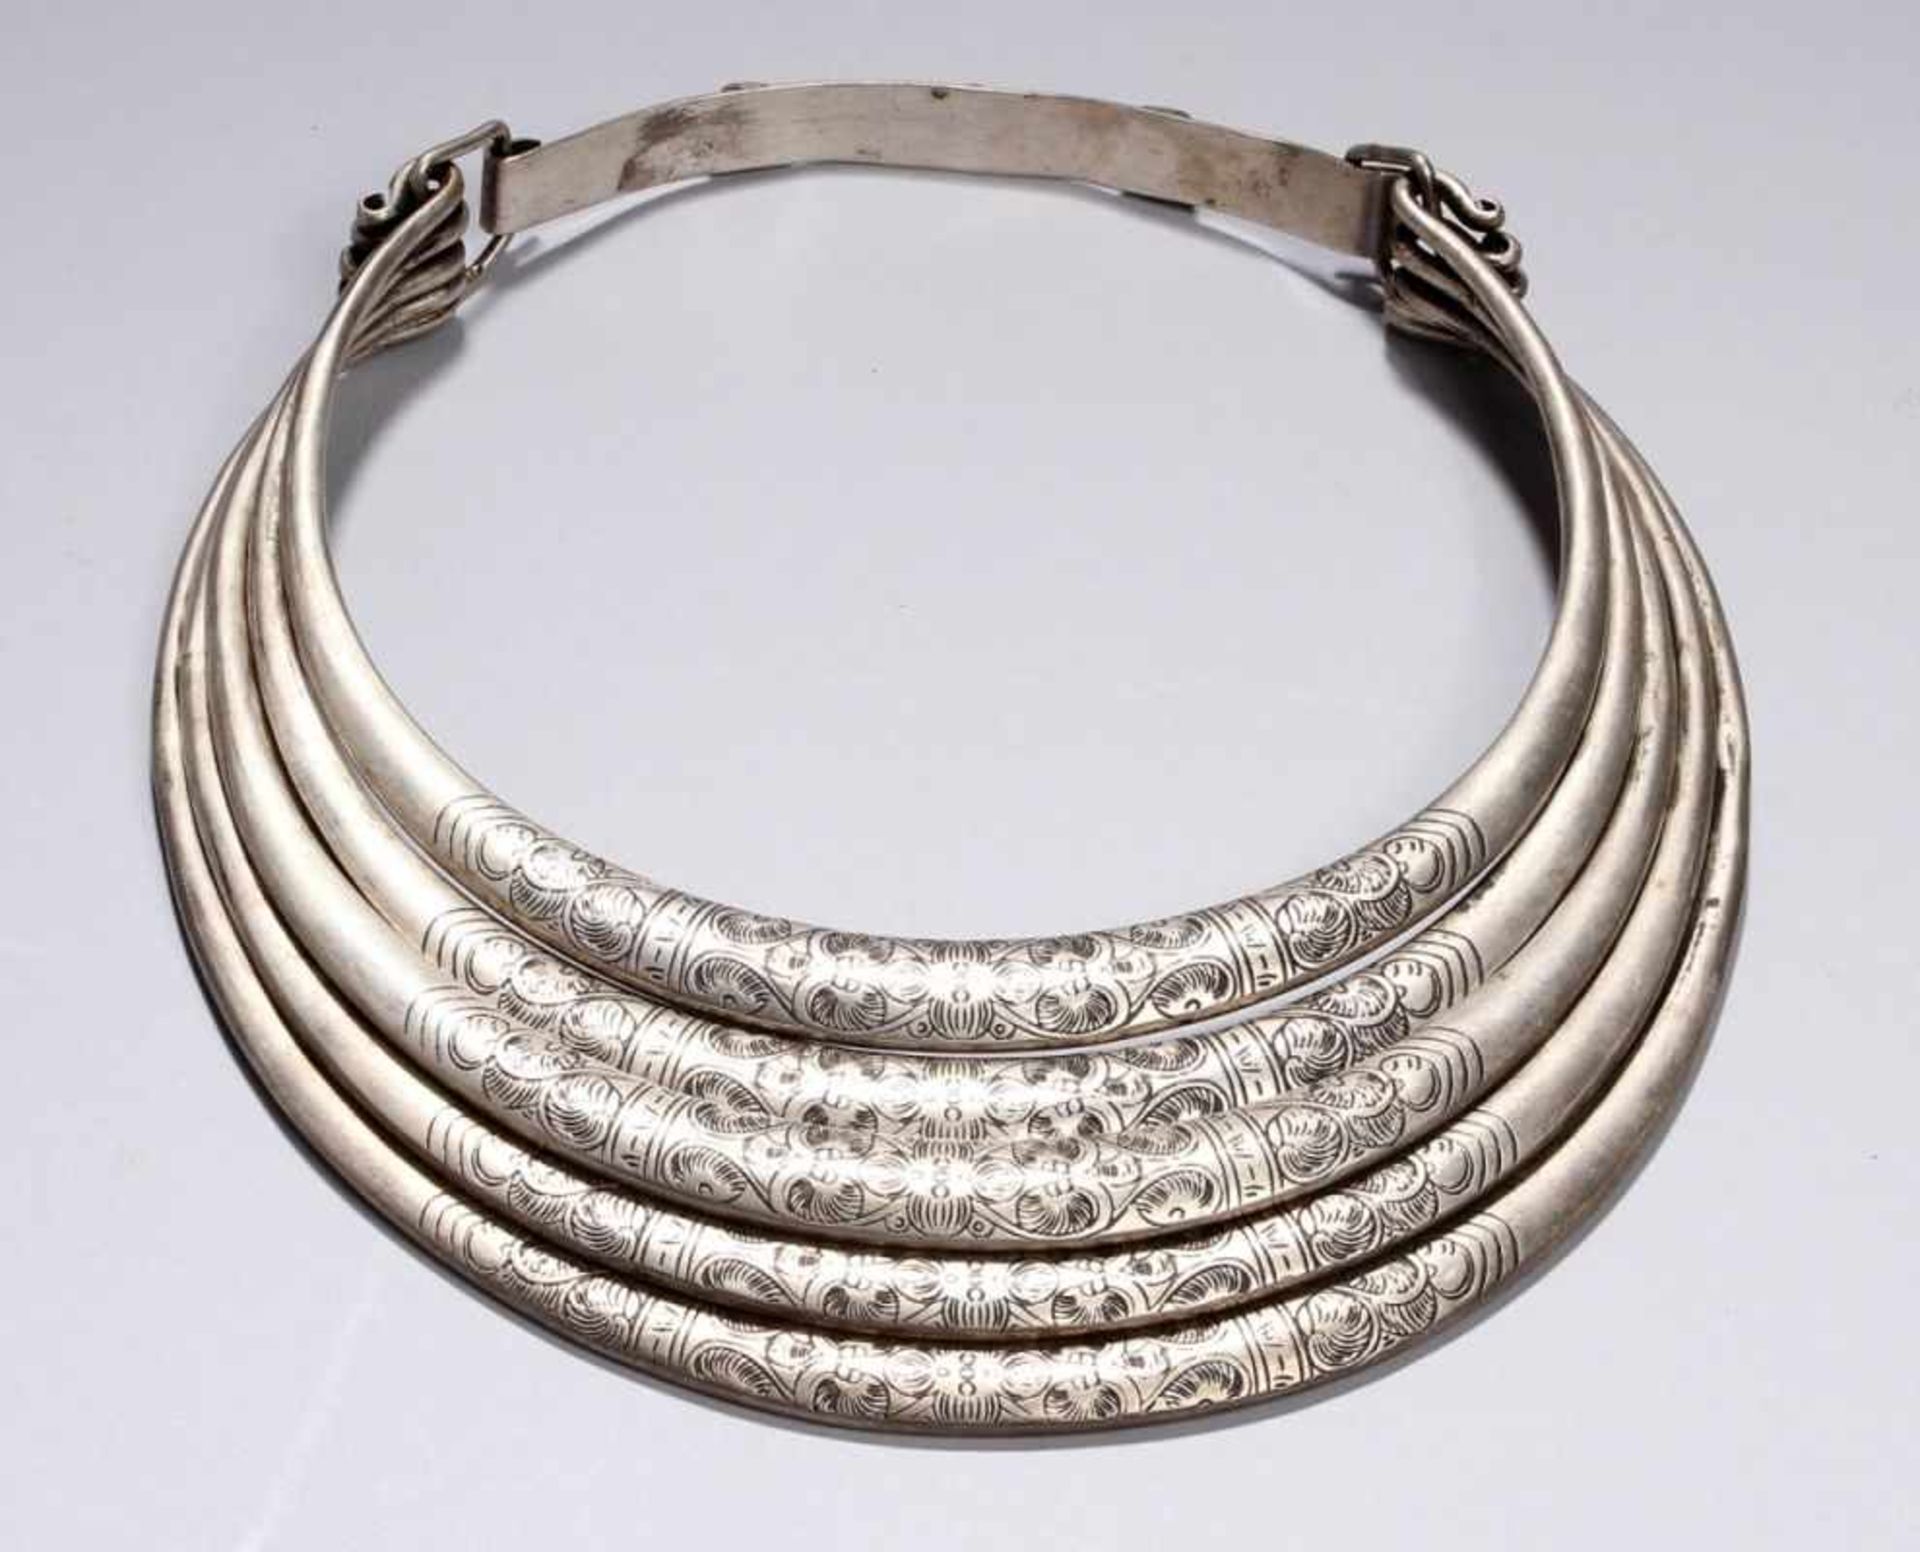 Hals-Schmuck, Hmong, Asien, um 1900, niedrig ligiertes Silber, gefertigt aus 5 Reifen,